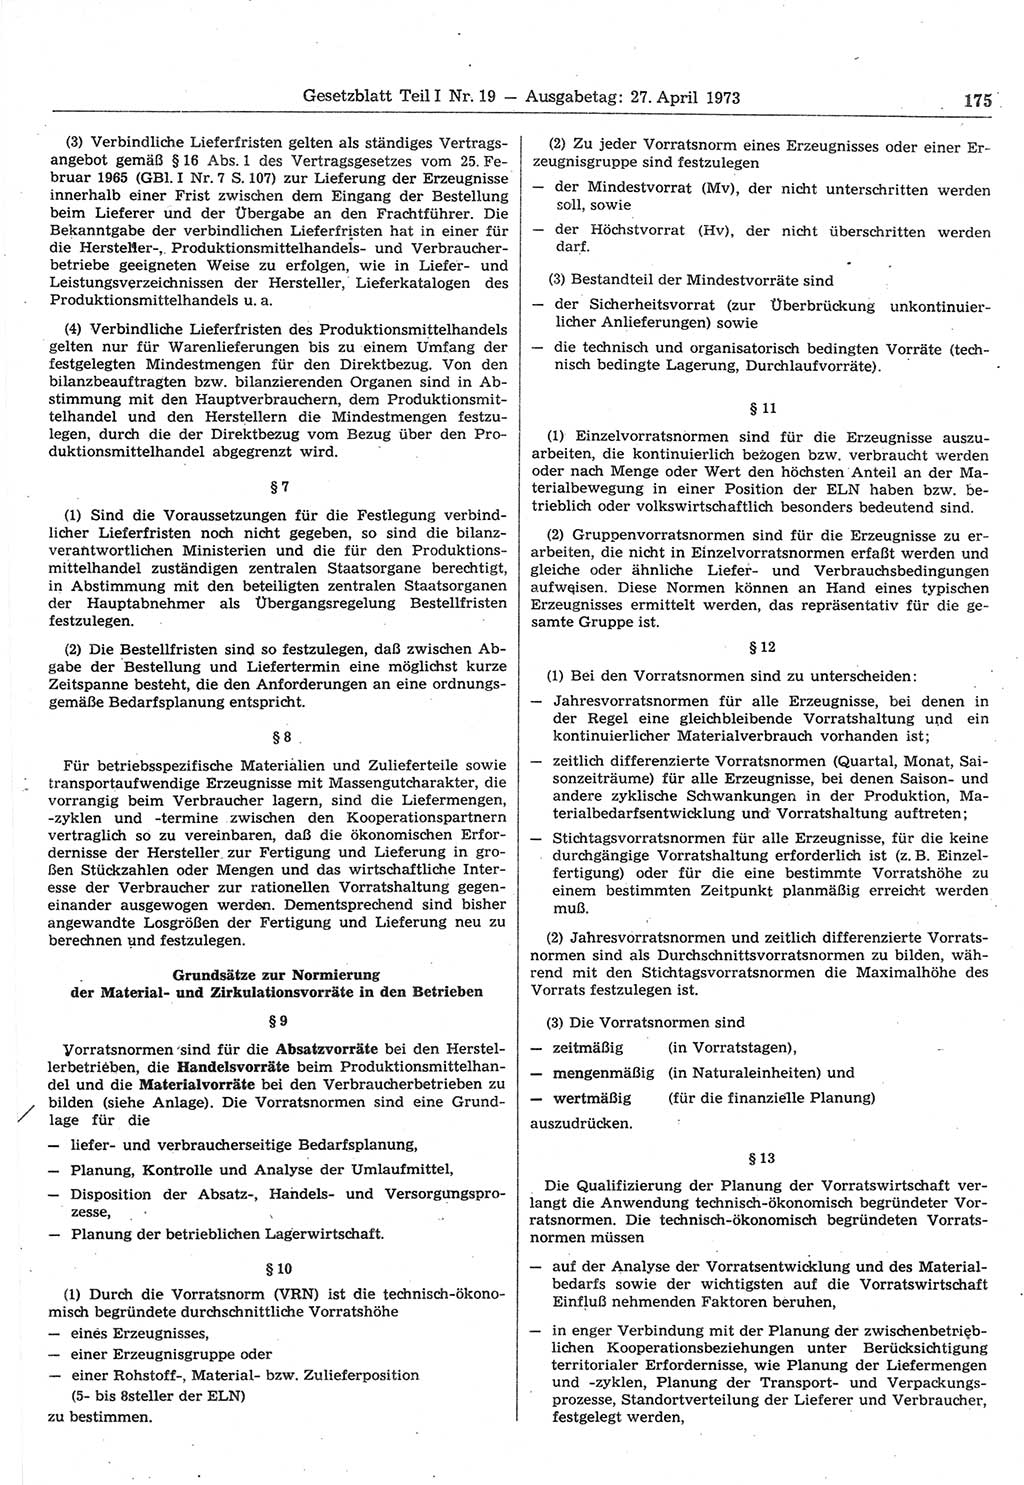 Gesetzblatt (GBl.) der Deutschen Demokratischen Republik (DDR) Teil Ⅰ 1973, Seite 175 (GBl. DDR Ⅰ 1973, S. 175)